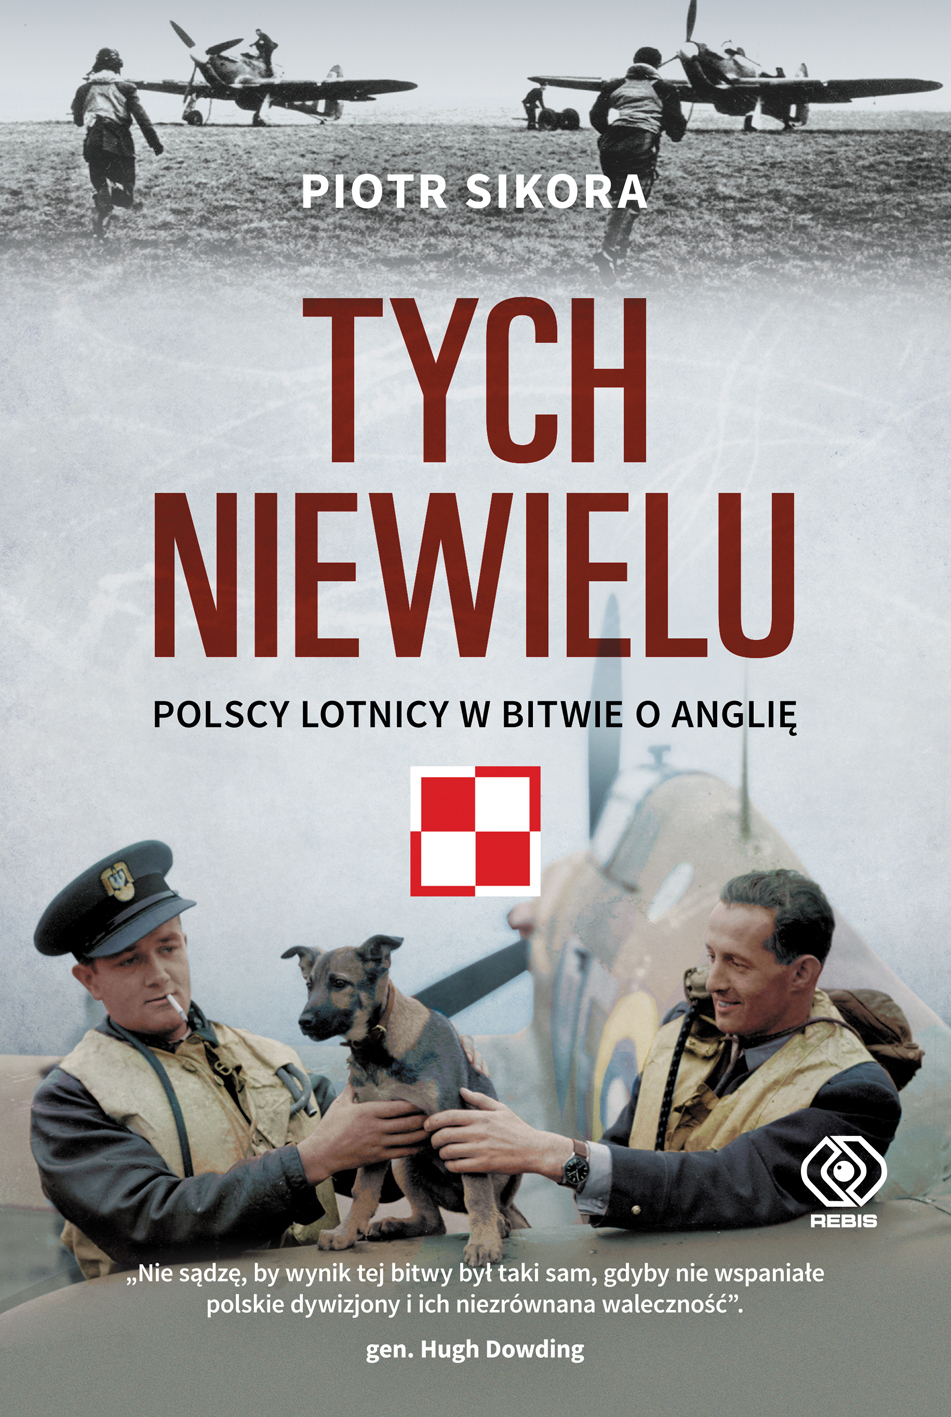 "Nie sądzę, by wynik tej bitwy był taki sam, gdyby nie wspaniałe polskie dywizjony i ich niezrównana waleczność". gen. Hugh Dowding